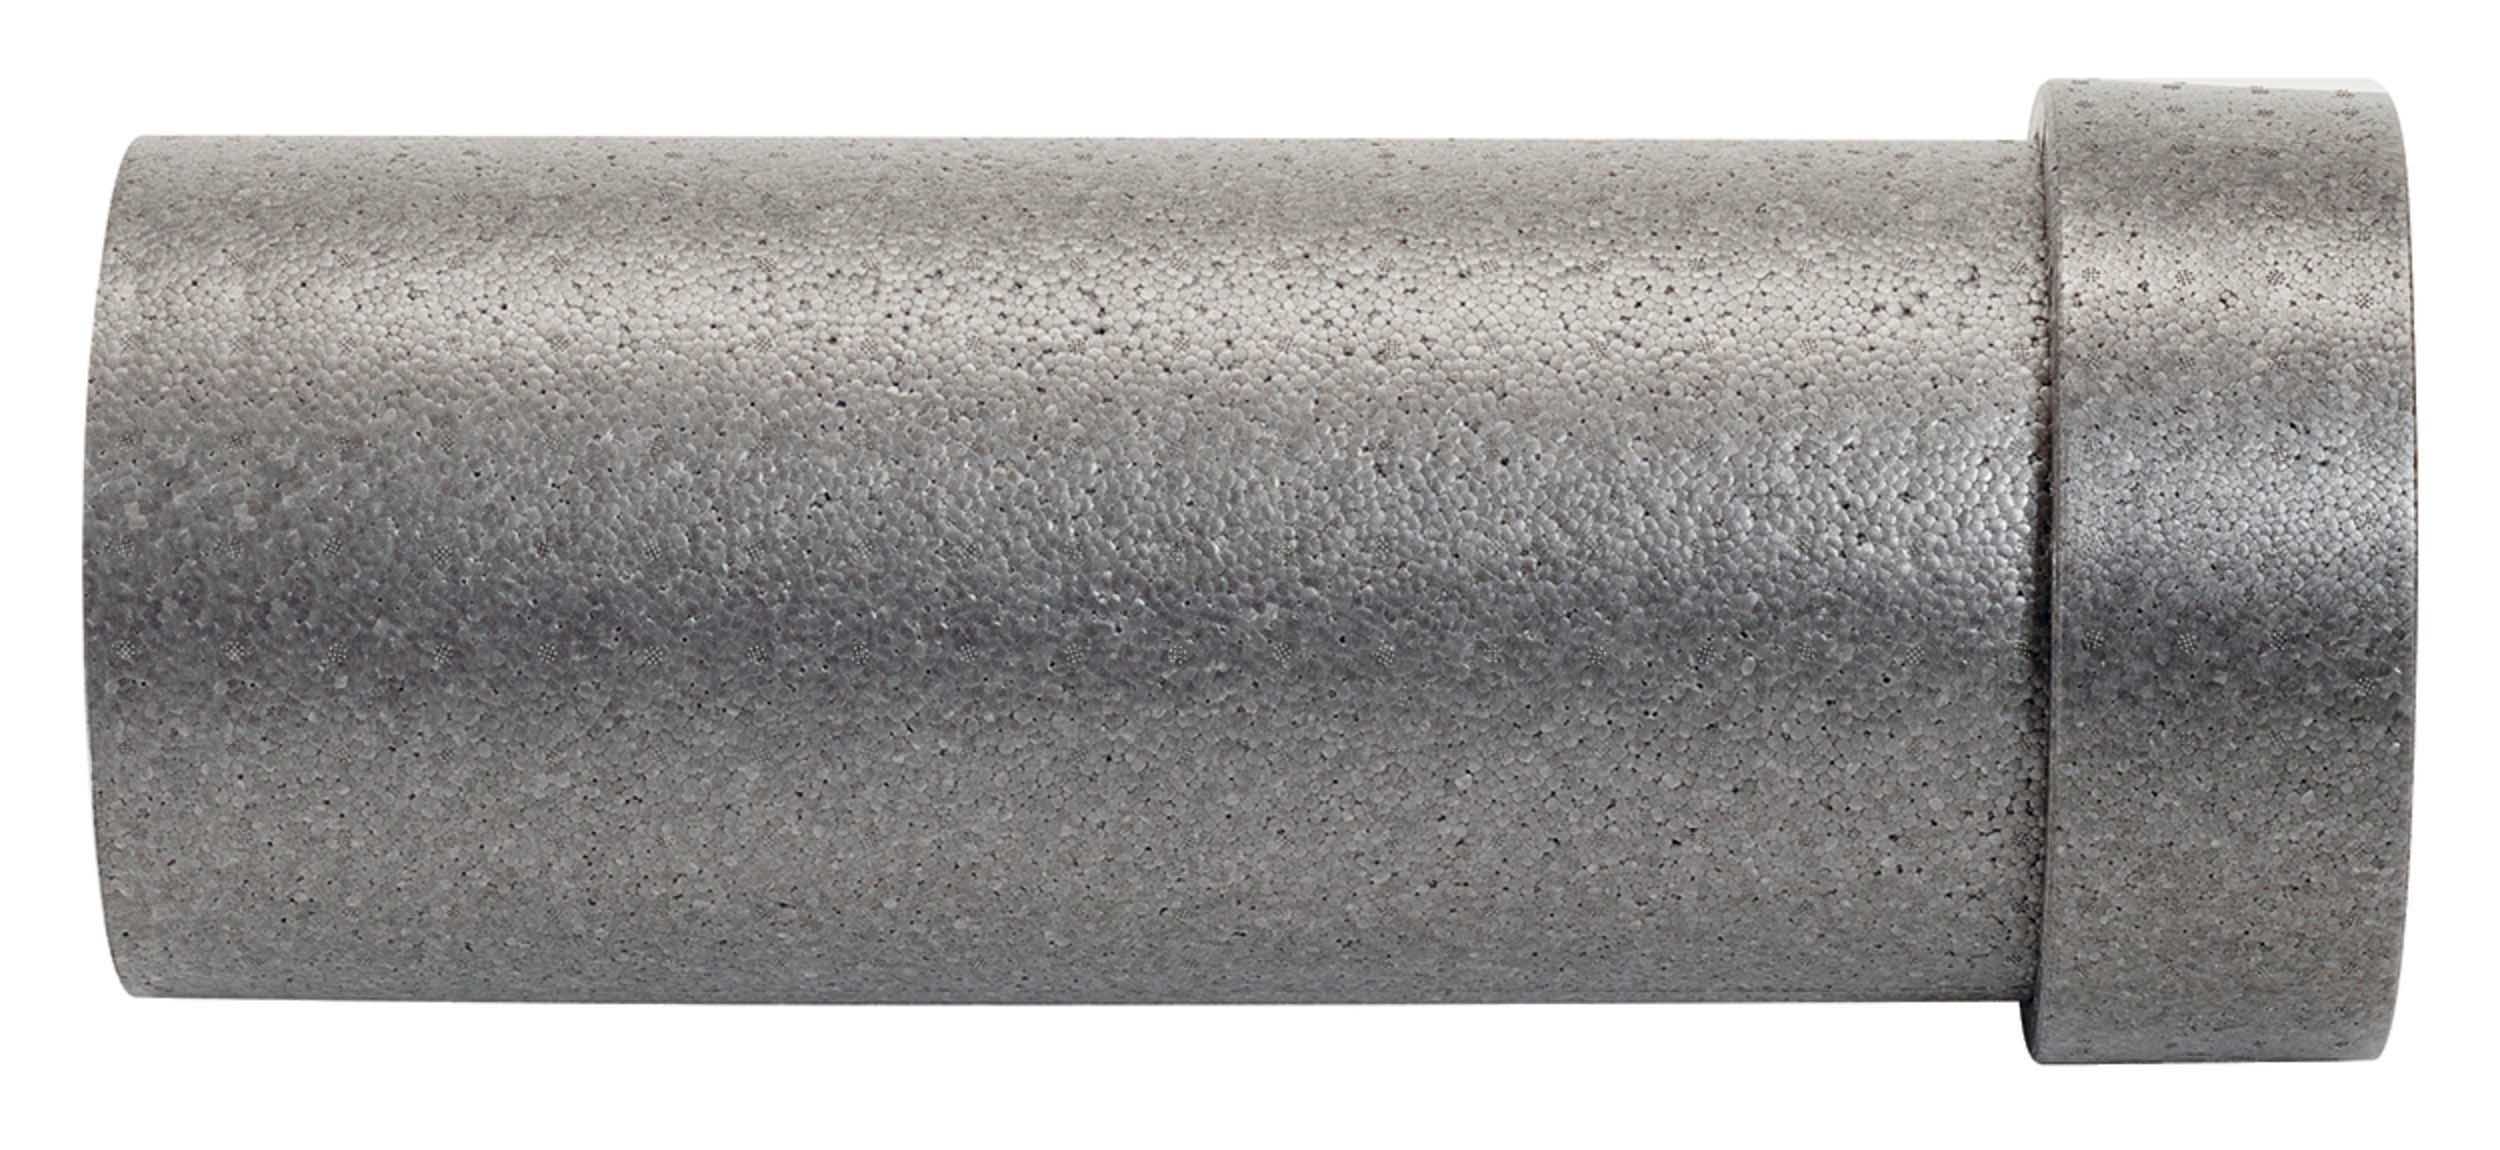 VA EPP Rohr Durchmesser 210/180 mm Länge 500 mm